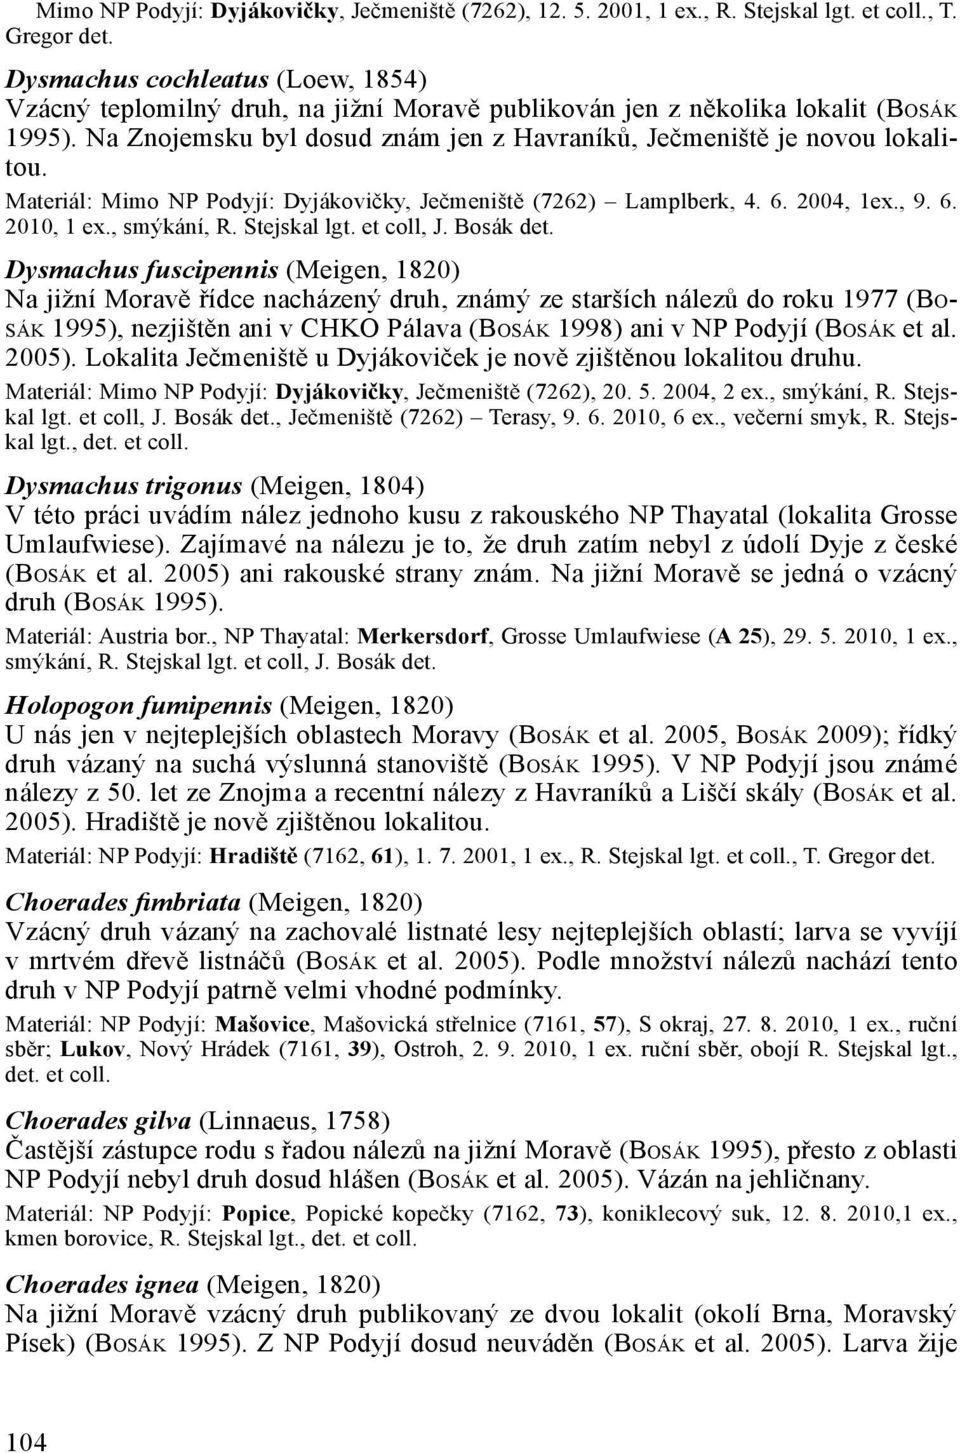 Materiál: Mimo NP Podyjí: Dyjákovičky, Ječmeniště (7262) Lamplberk, 4. 6. 2004, 1ex., 9. 6. 2010, 1 ex., smýkání, R. Stejskal lgt. et coll, J. Bosák det.